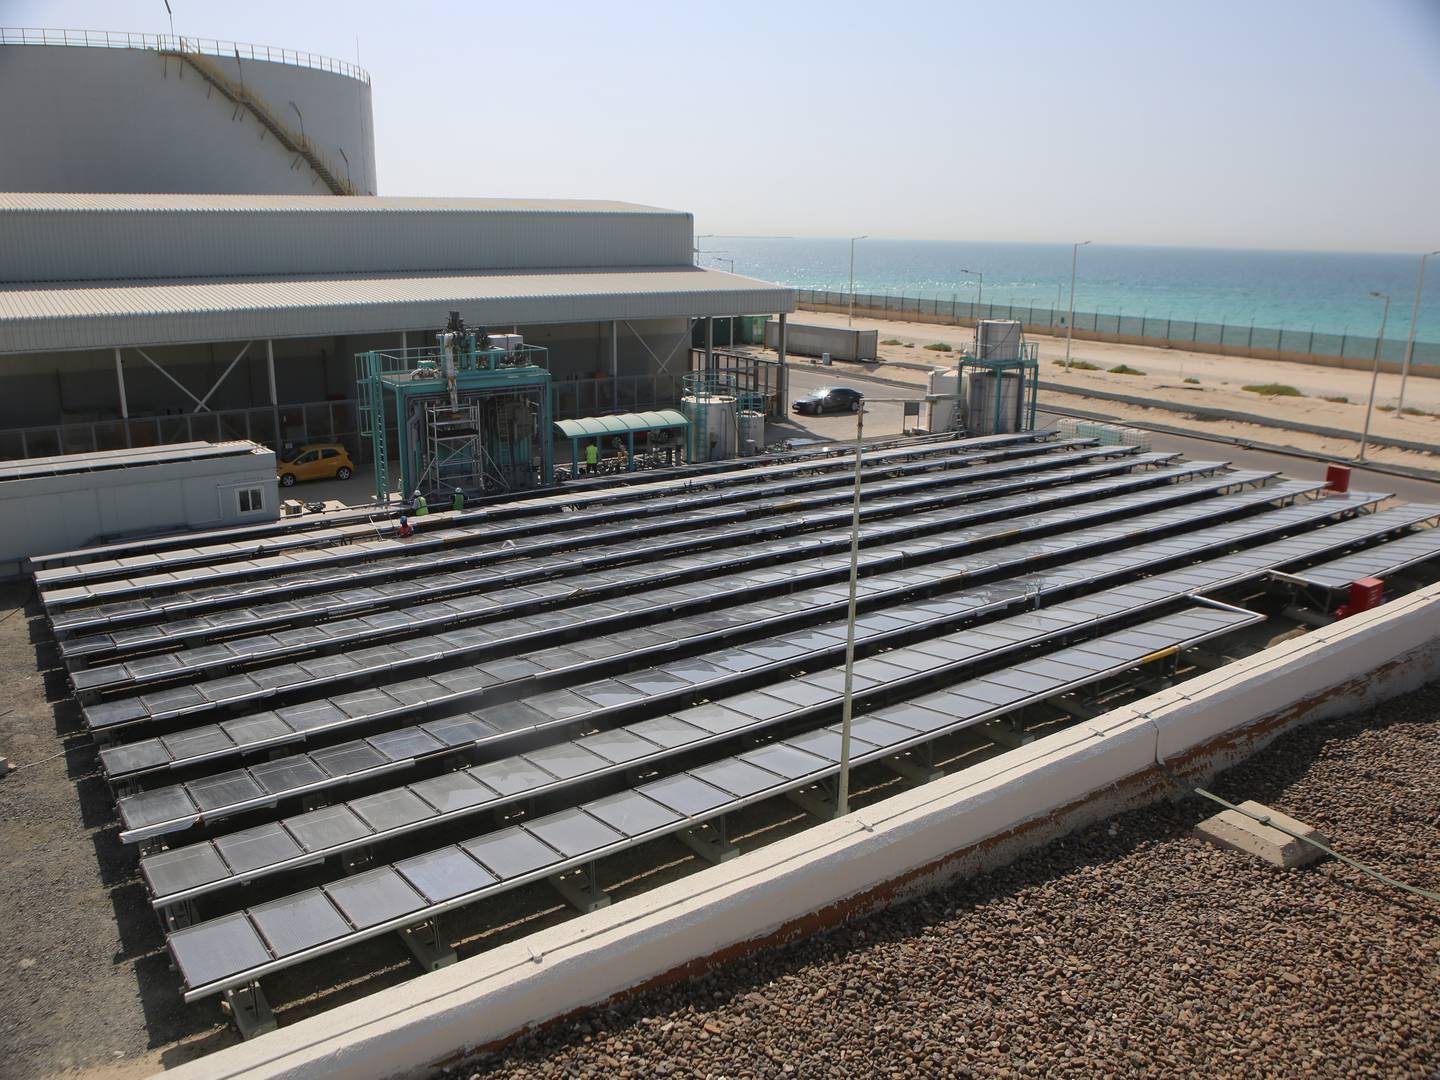 Die Dubai Electricity and Water Authority unterzeichnete eine Partnerschaftsvereinbarung mit Desolenator, um ein nachhaltiges CO2-freies Modell für die Wasserentsalzung und -reinigung aufzubauen.  Foto: Dewa